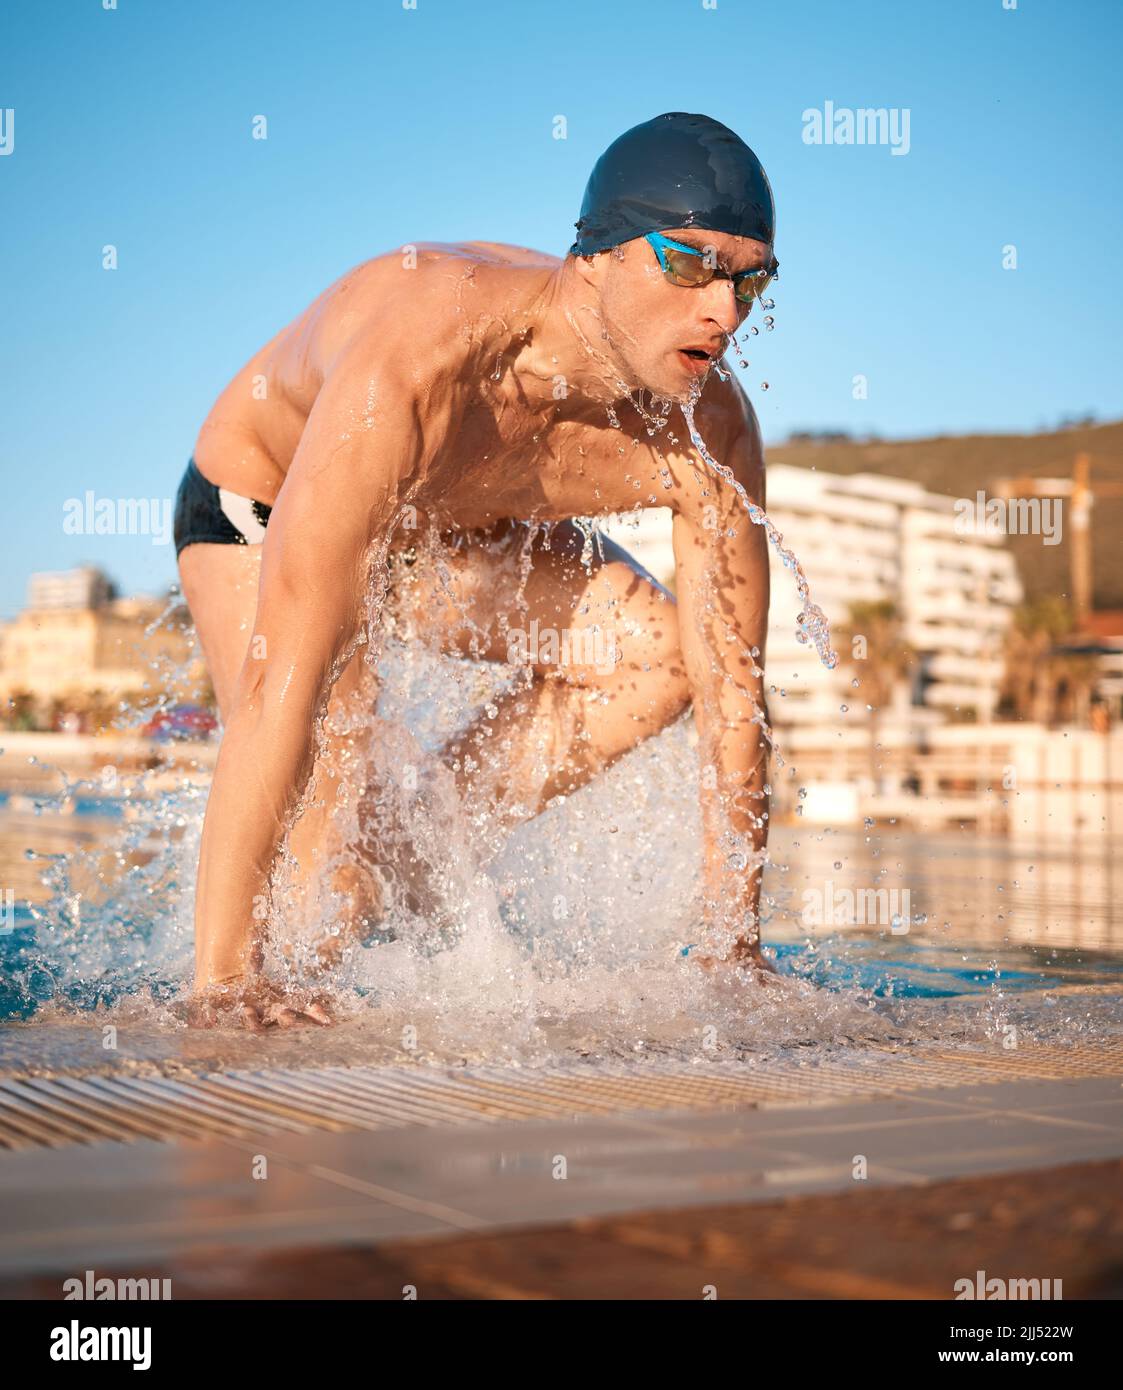 Ha schiacciato quel giro. Un bel giovane atleta maschio che nuotava in una piscina olimpionica. Foto Stock